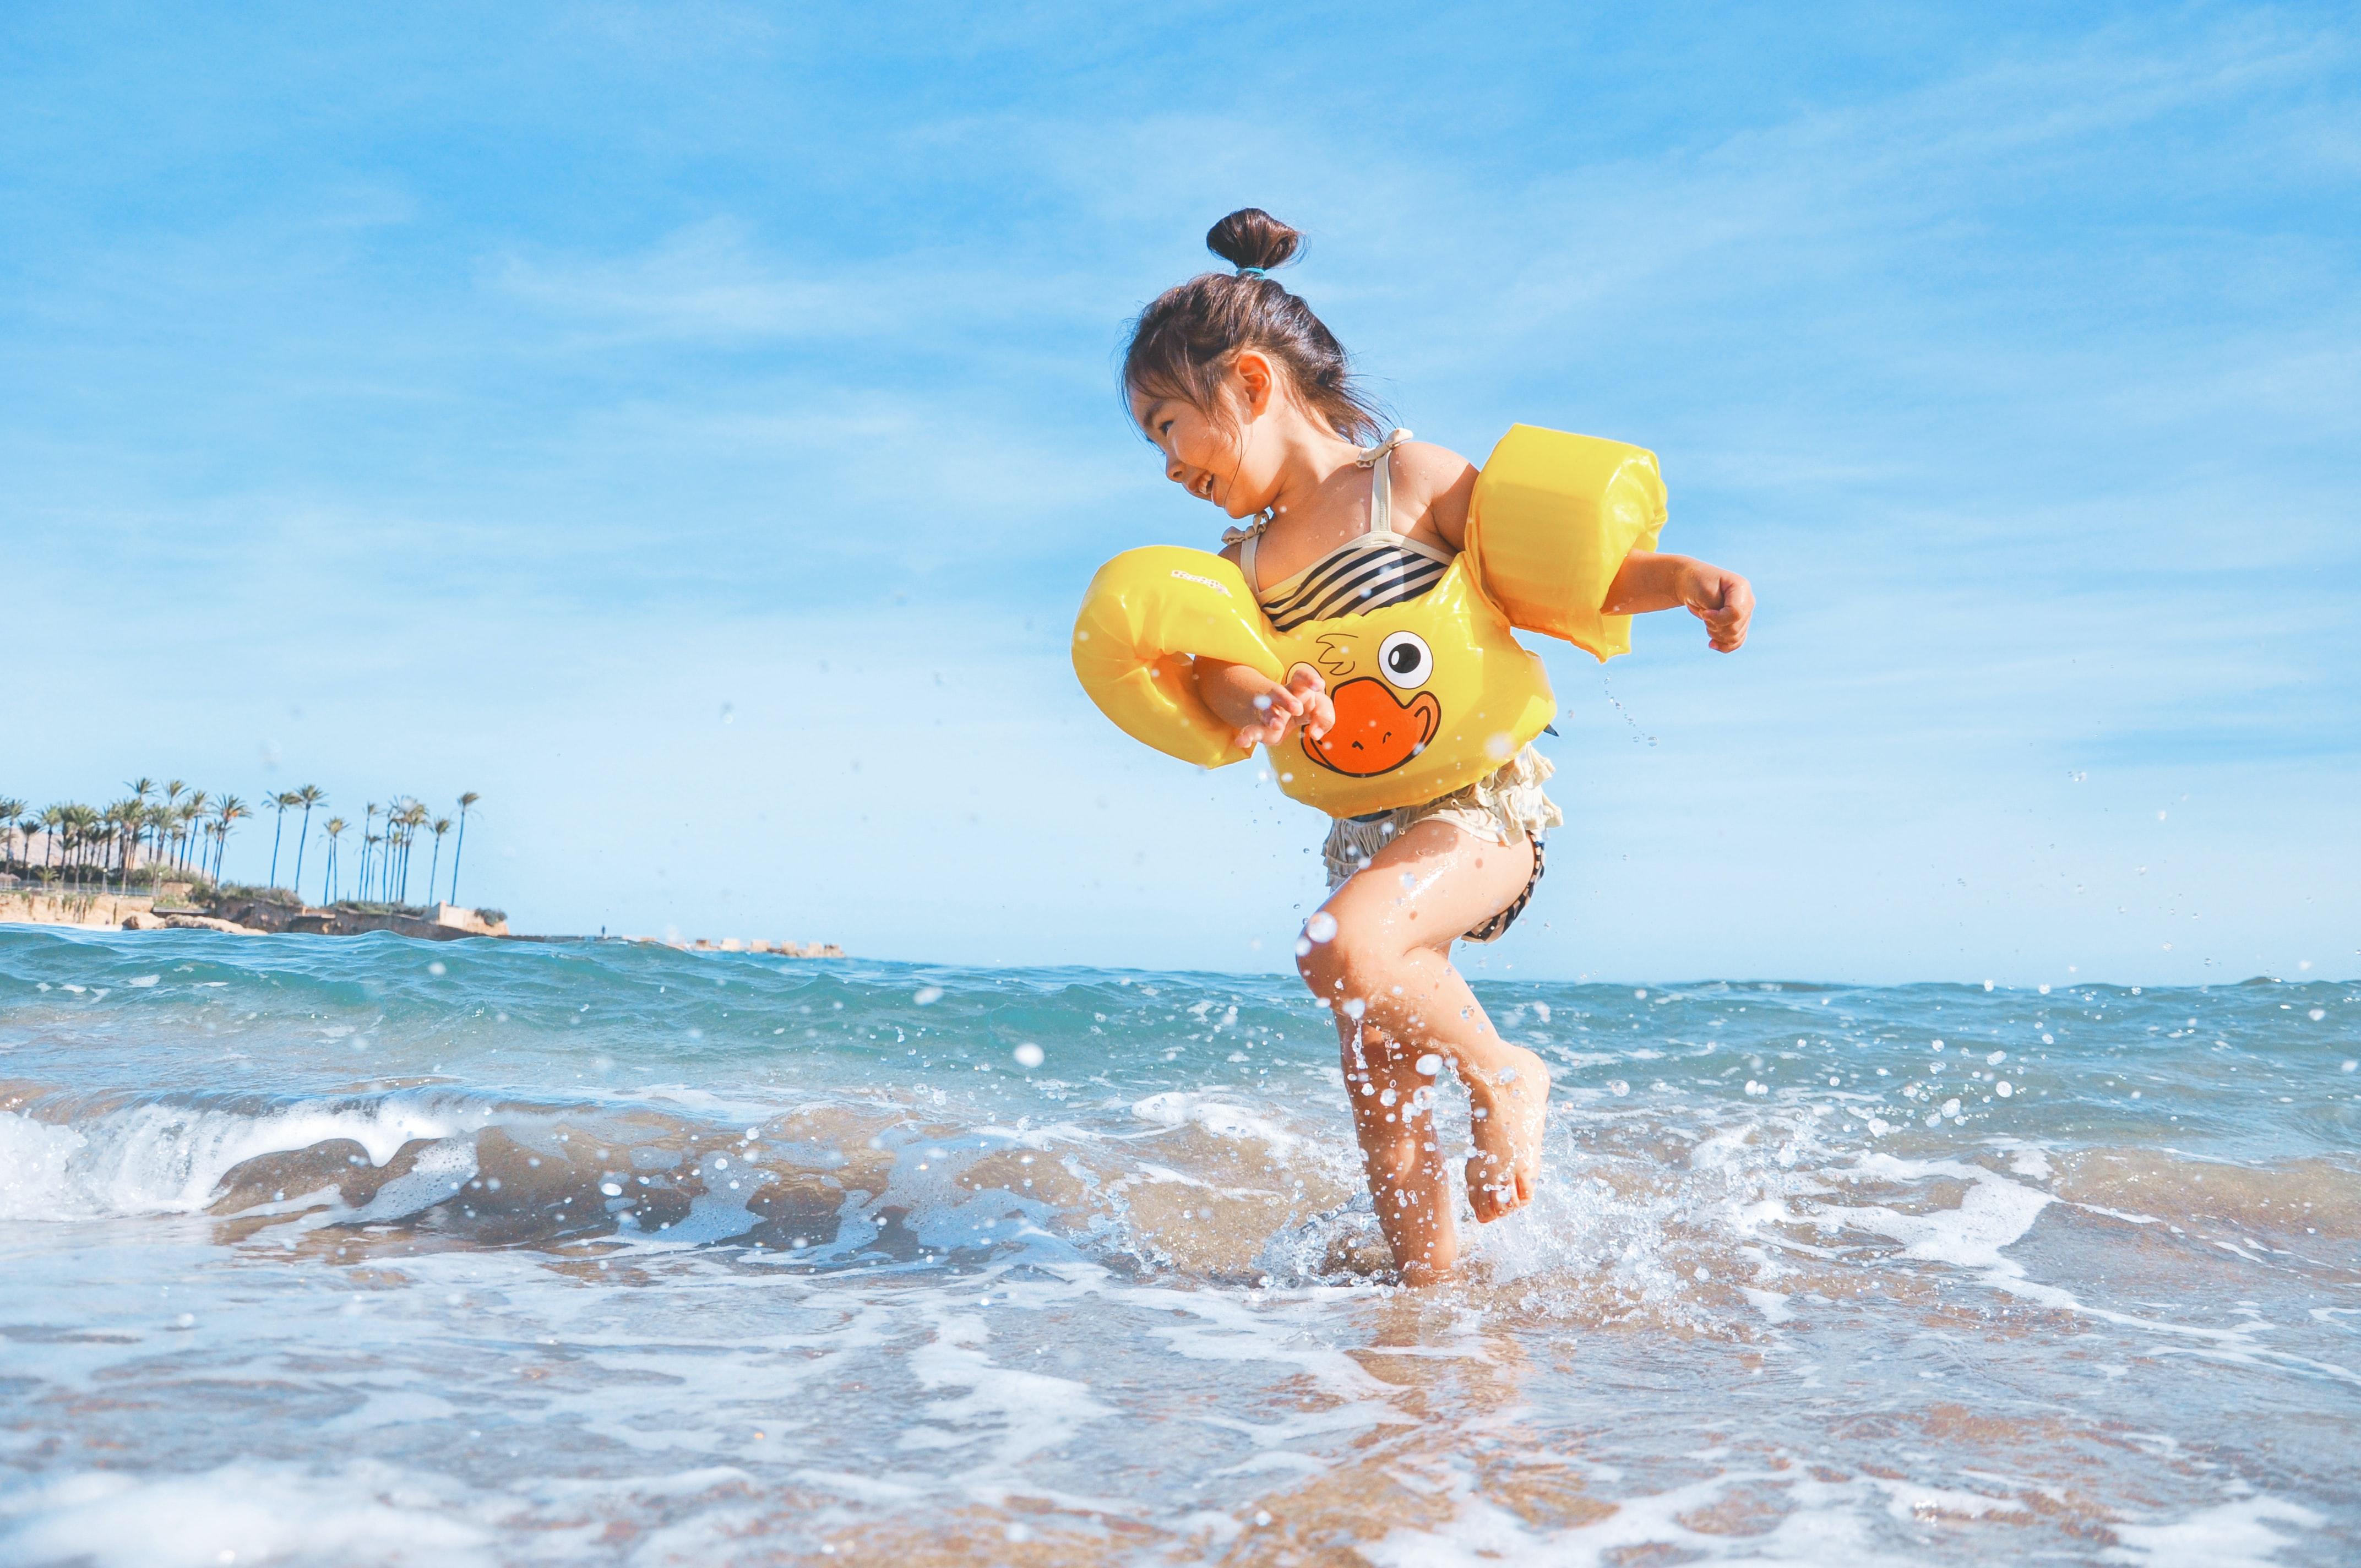 Bambina con braccioli gialli gioca con l’acqua sulla riva del mare